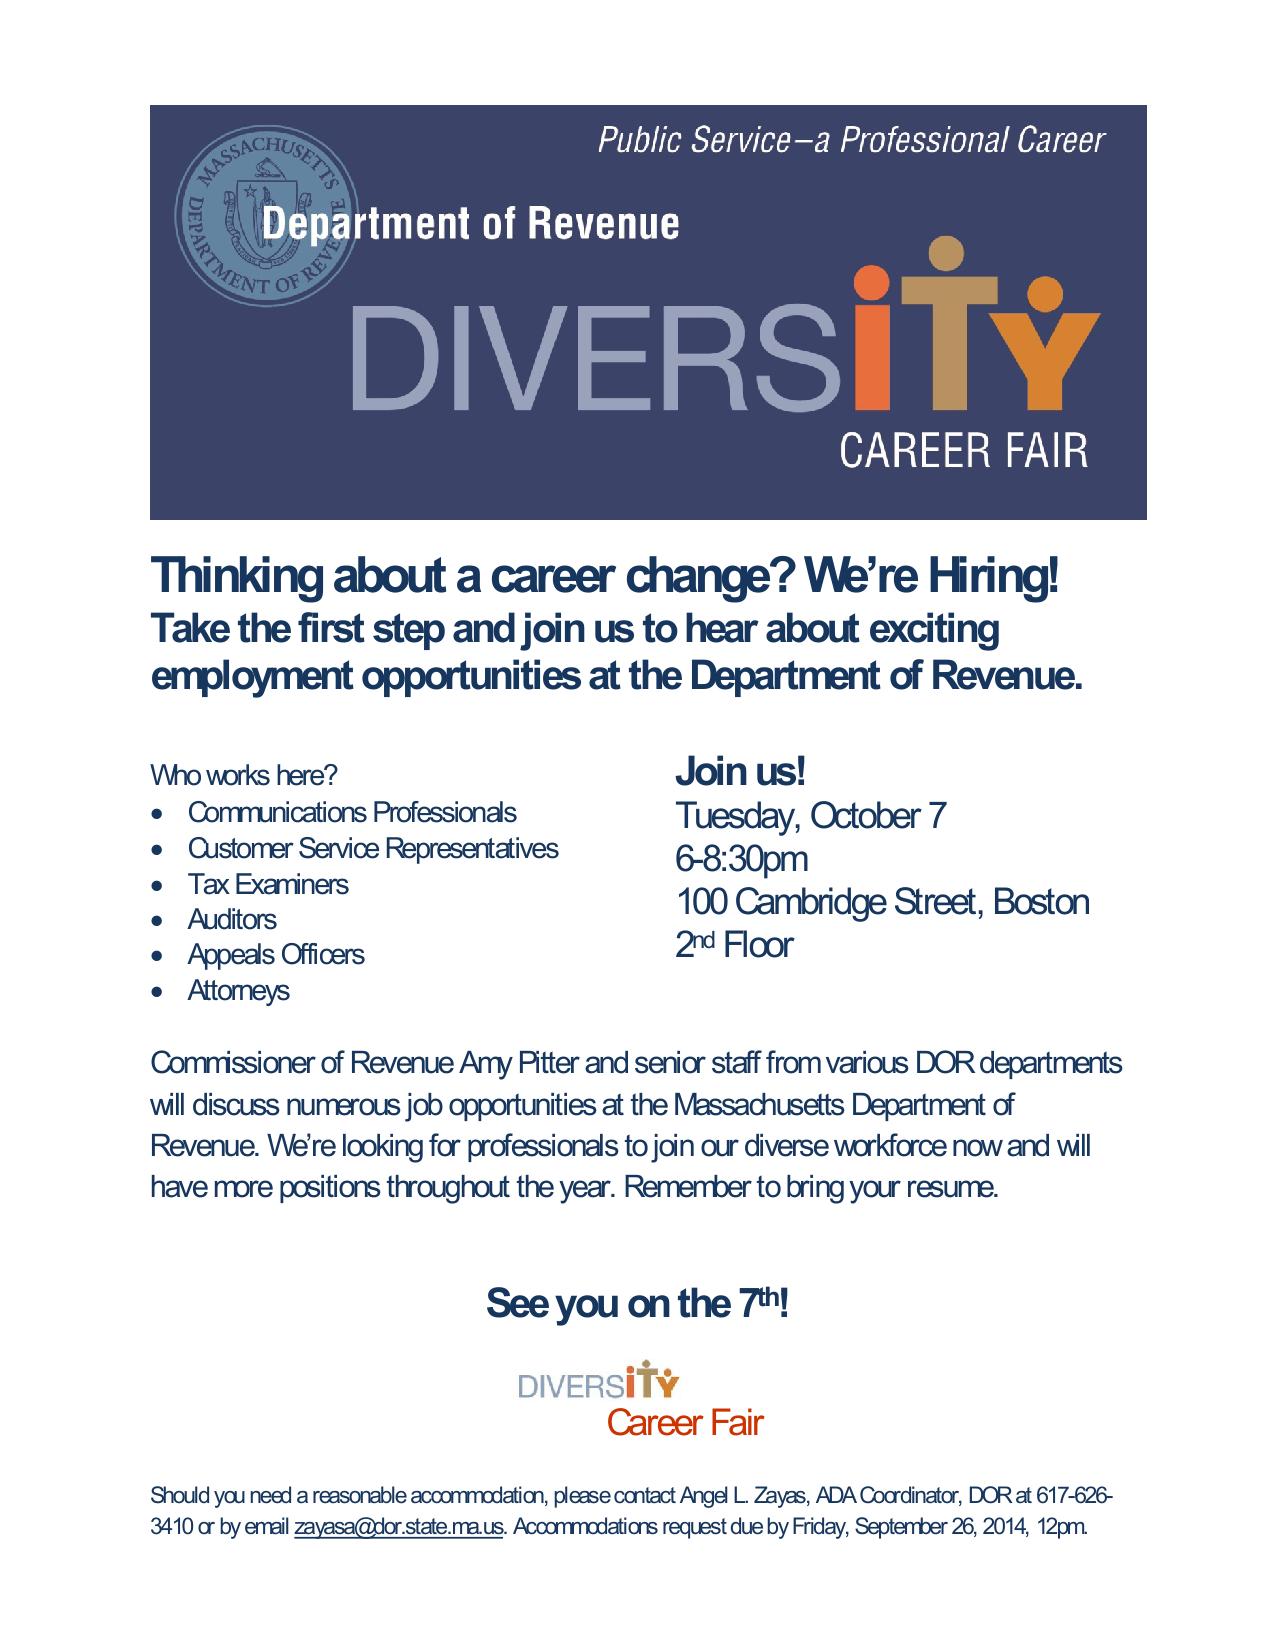 Massachusetts DOR Diversity Career Fair-001